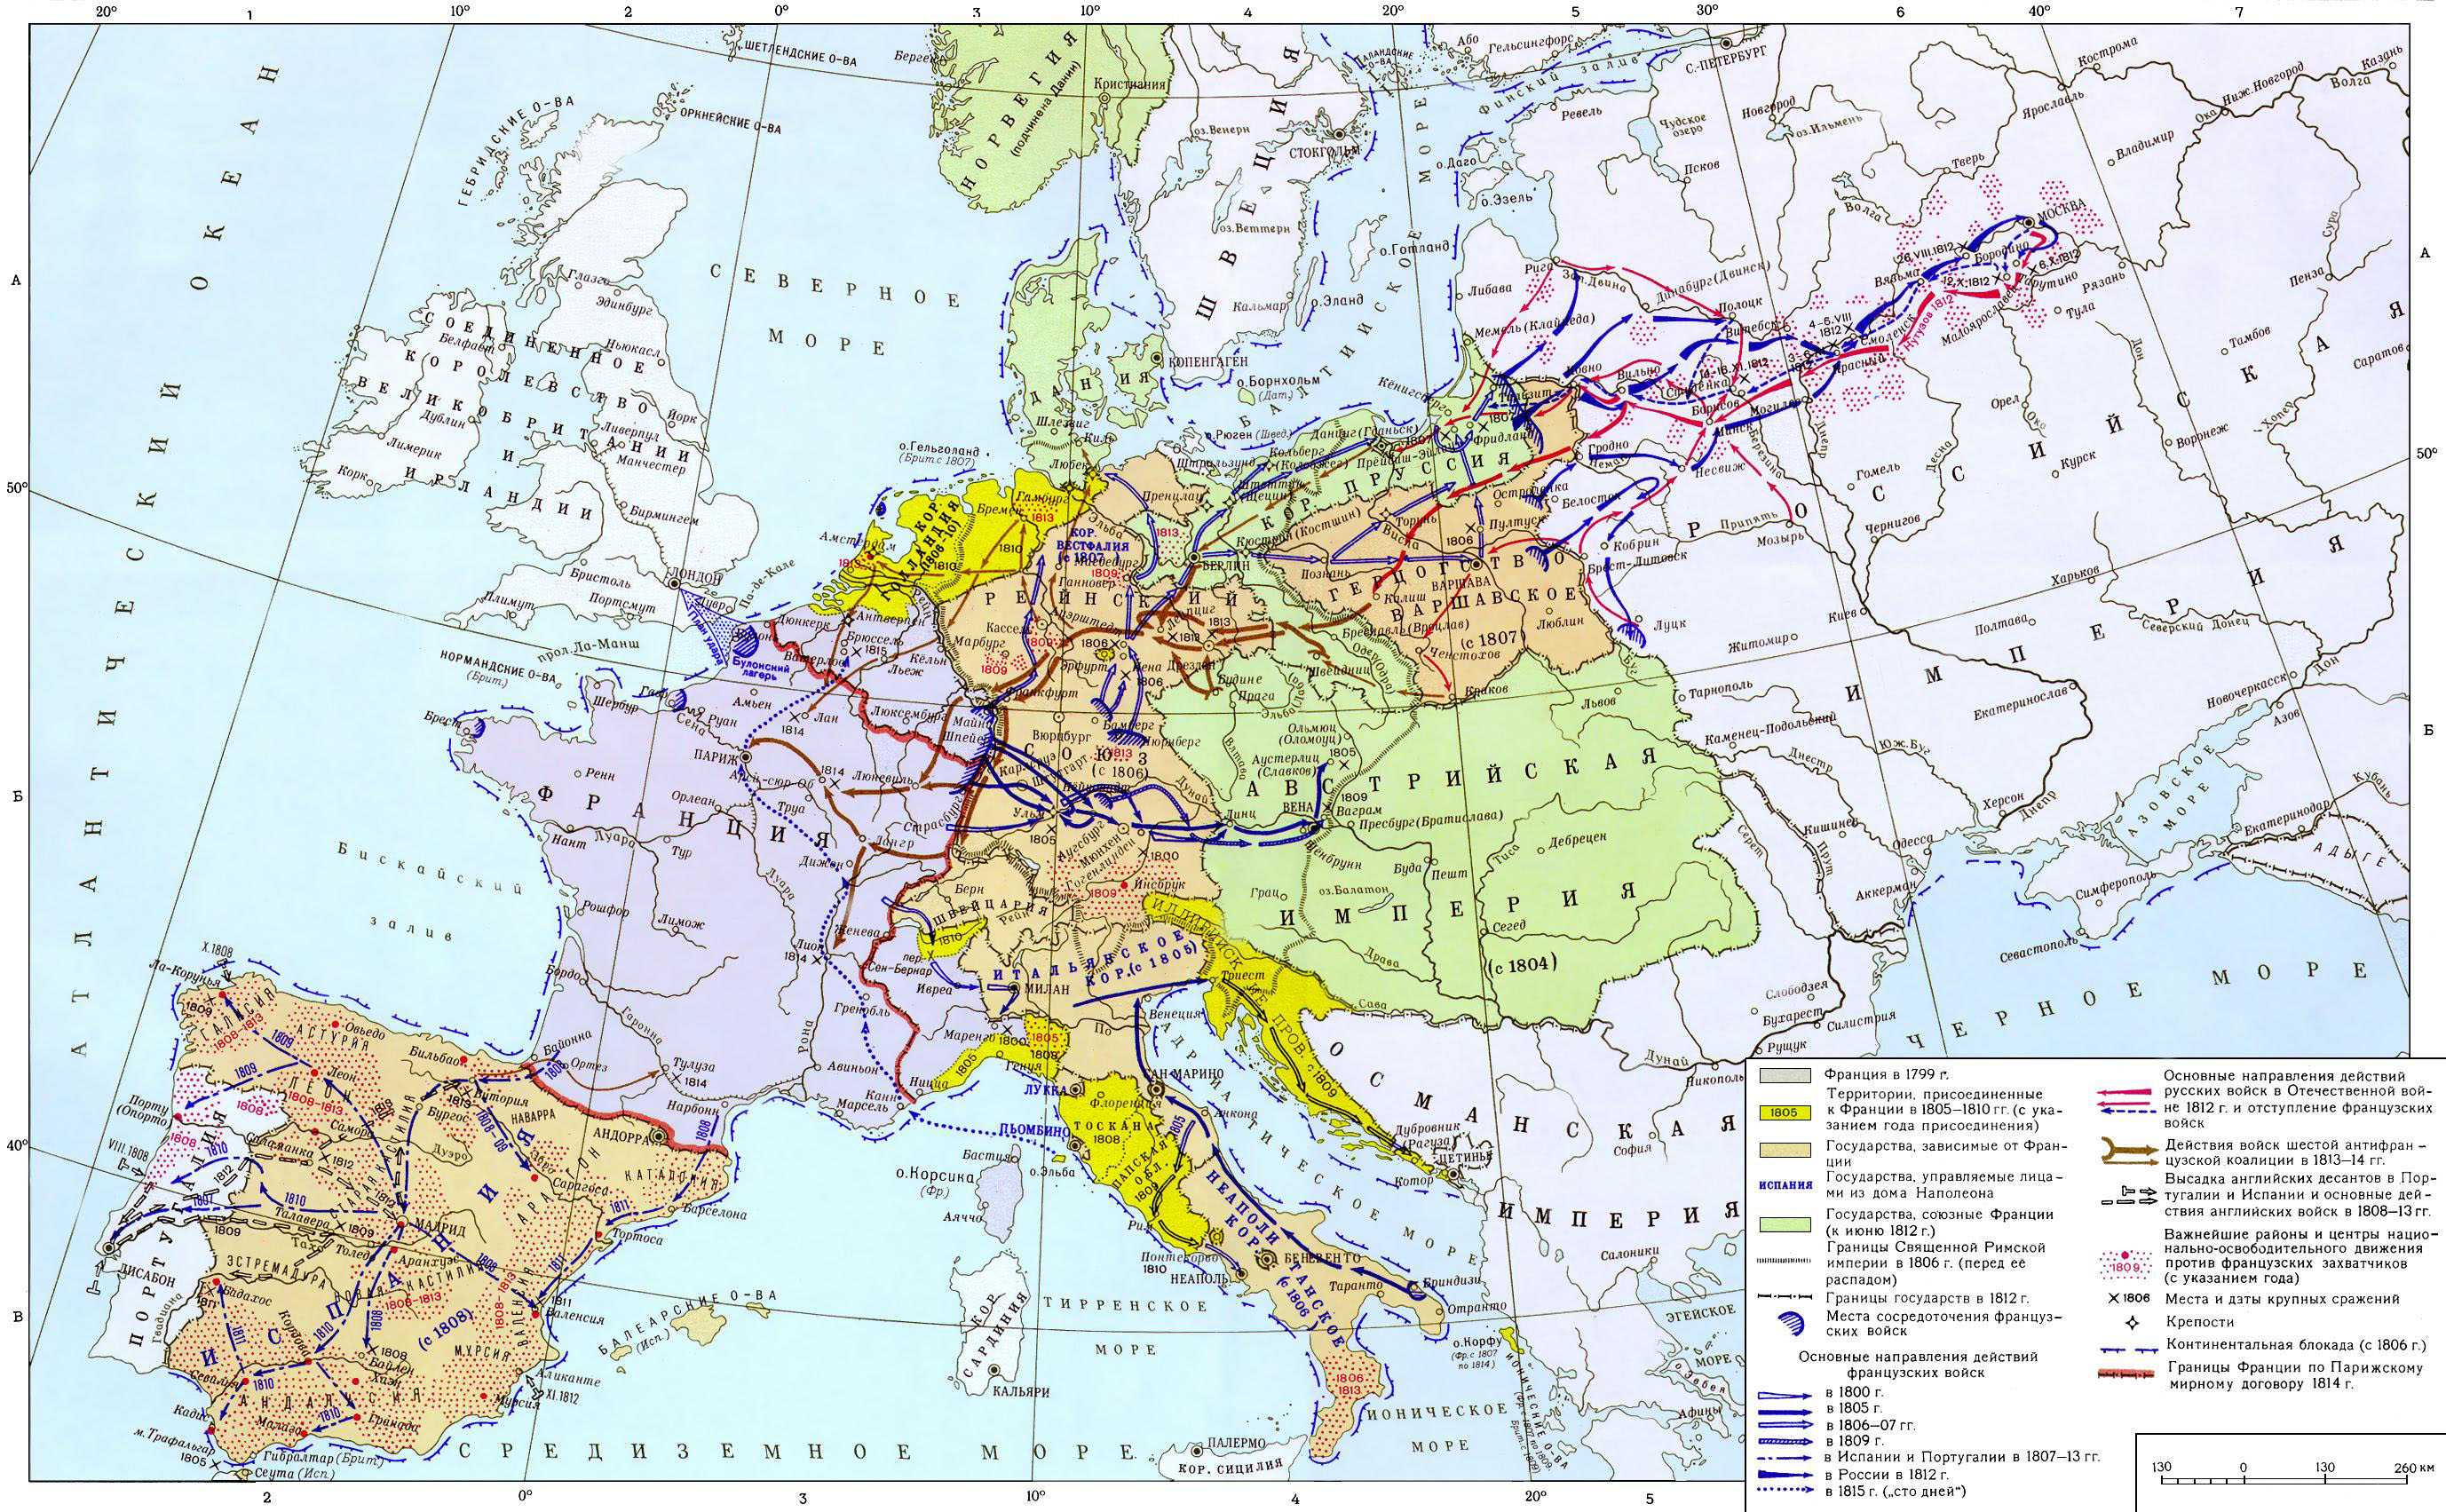 Европа входит в войну. Карта Европа в период наполеоновских войн 1799-1815. Европа в период революционных и наполеоновских войн 1799-1815. Европа в годы наполеоновских войн 1800-1815. Карта войны Наполеона в Европе.